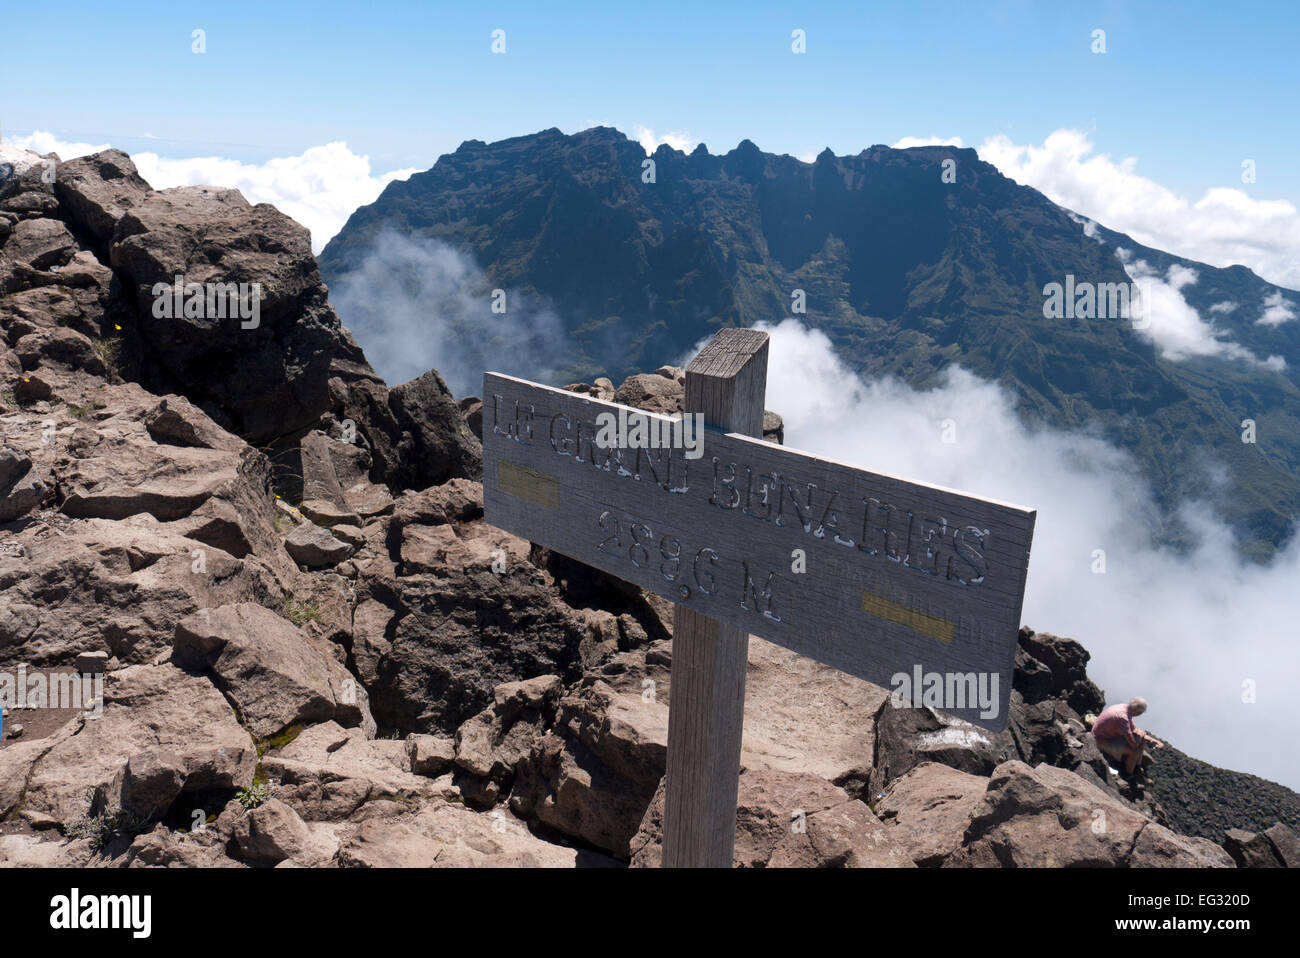 Le sommet du Grand Benare, et la vue sur le Grand Morne et le Piton des Neiges Banque D'Images